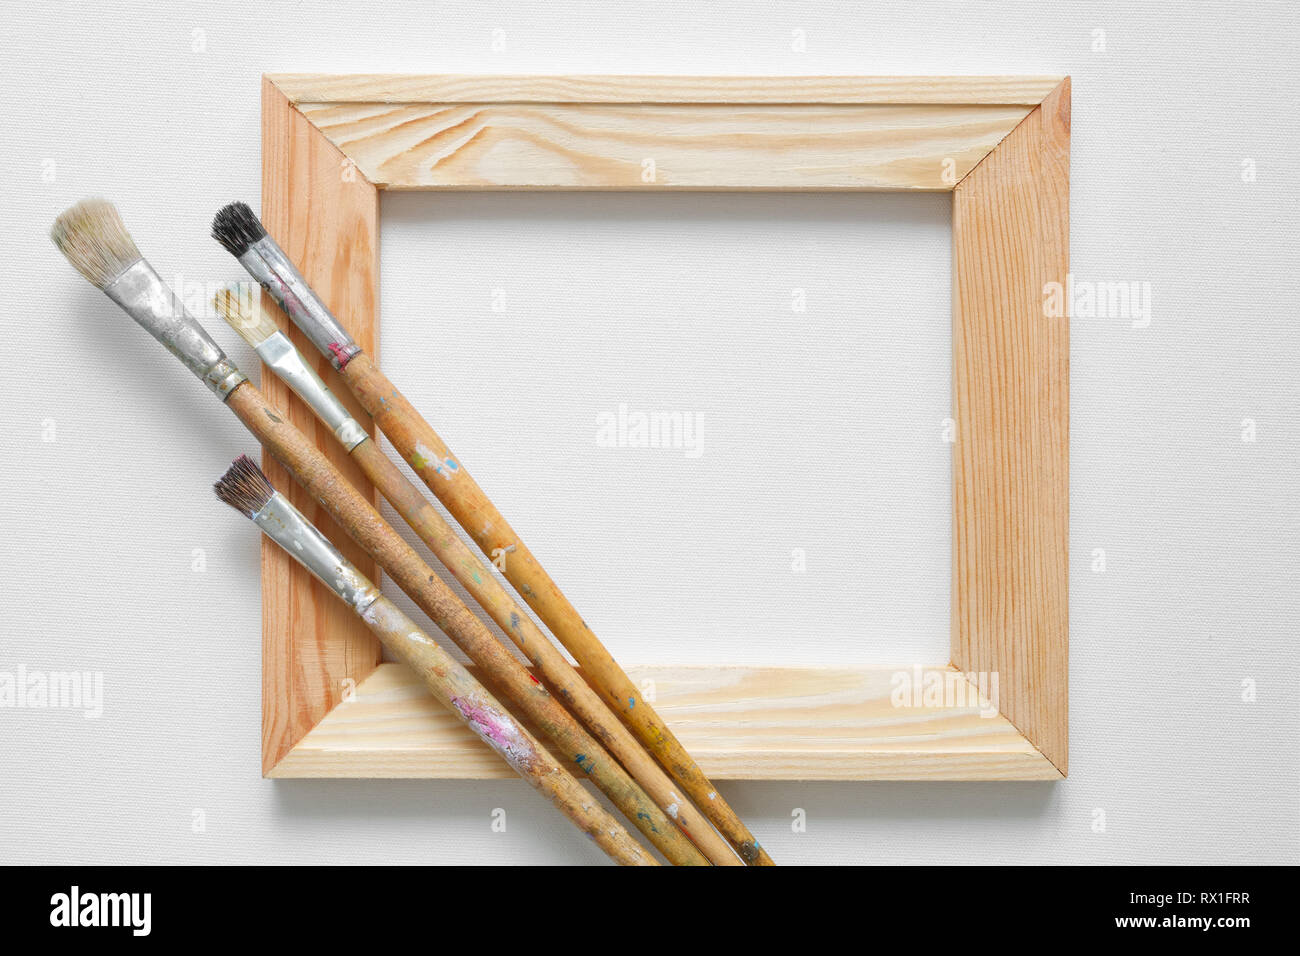 Holz- stretcher Bar und Pinseln auf weißem Artist canvas Hintergrund. Ansicht von oben. Kopieren Sie Platz für Text. Stockfoto